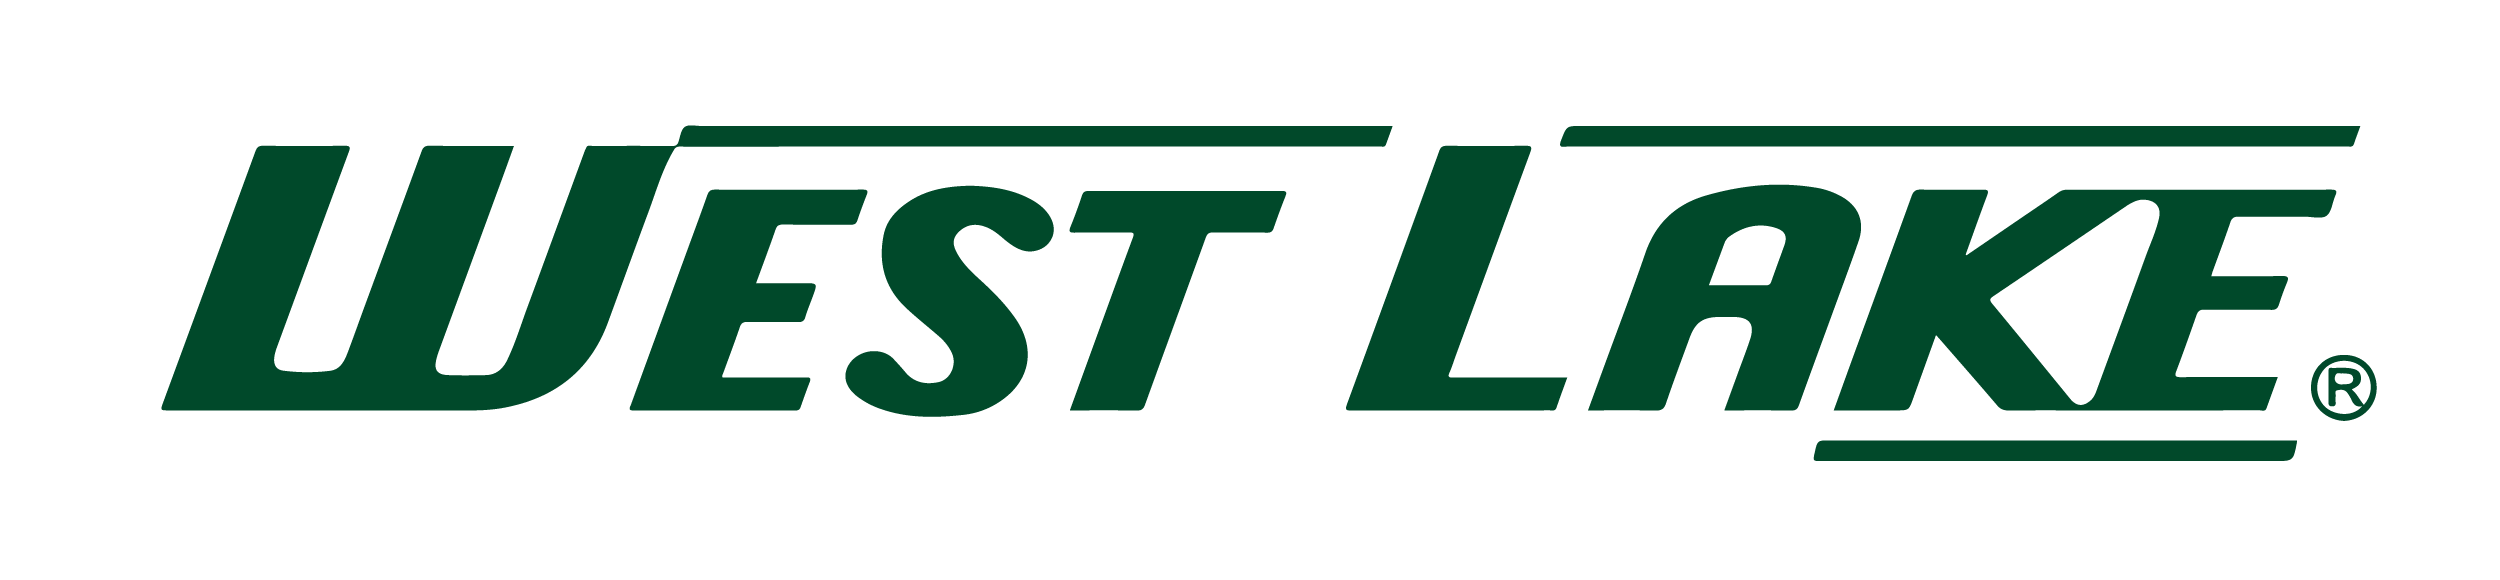 Westlake_logo-green